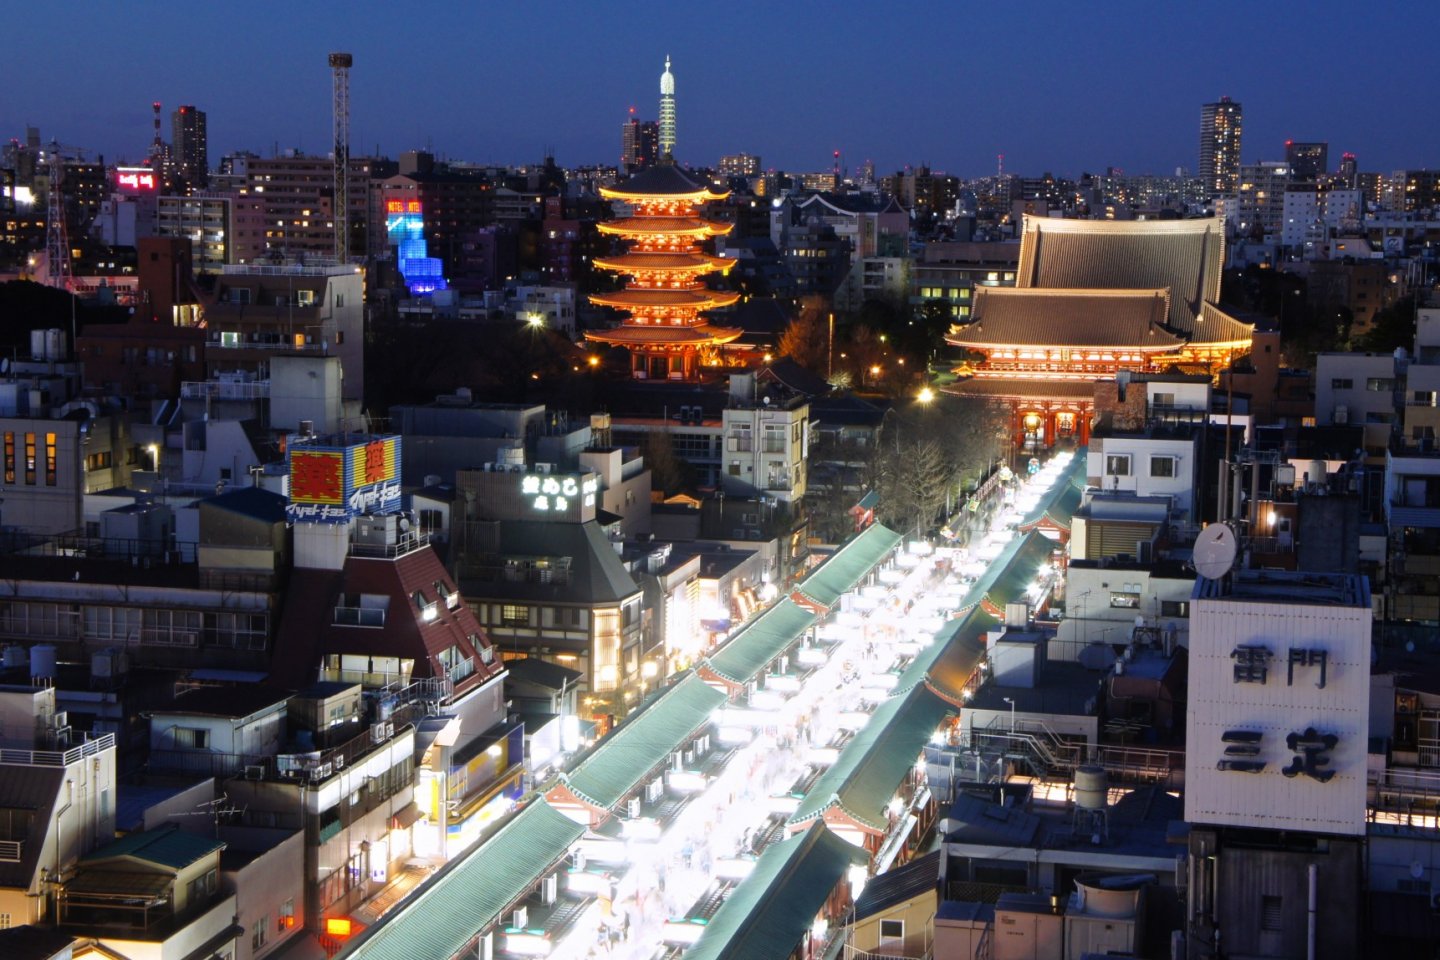 Khung cảnh hoàng hôn của khu vực Asakusa và nơi thắp sáng lung linh Nakamise Dori, con phố mua sắm dẫn đến ngôi đền.